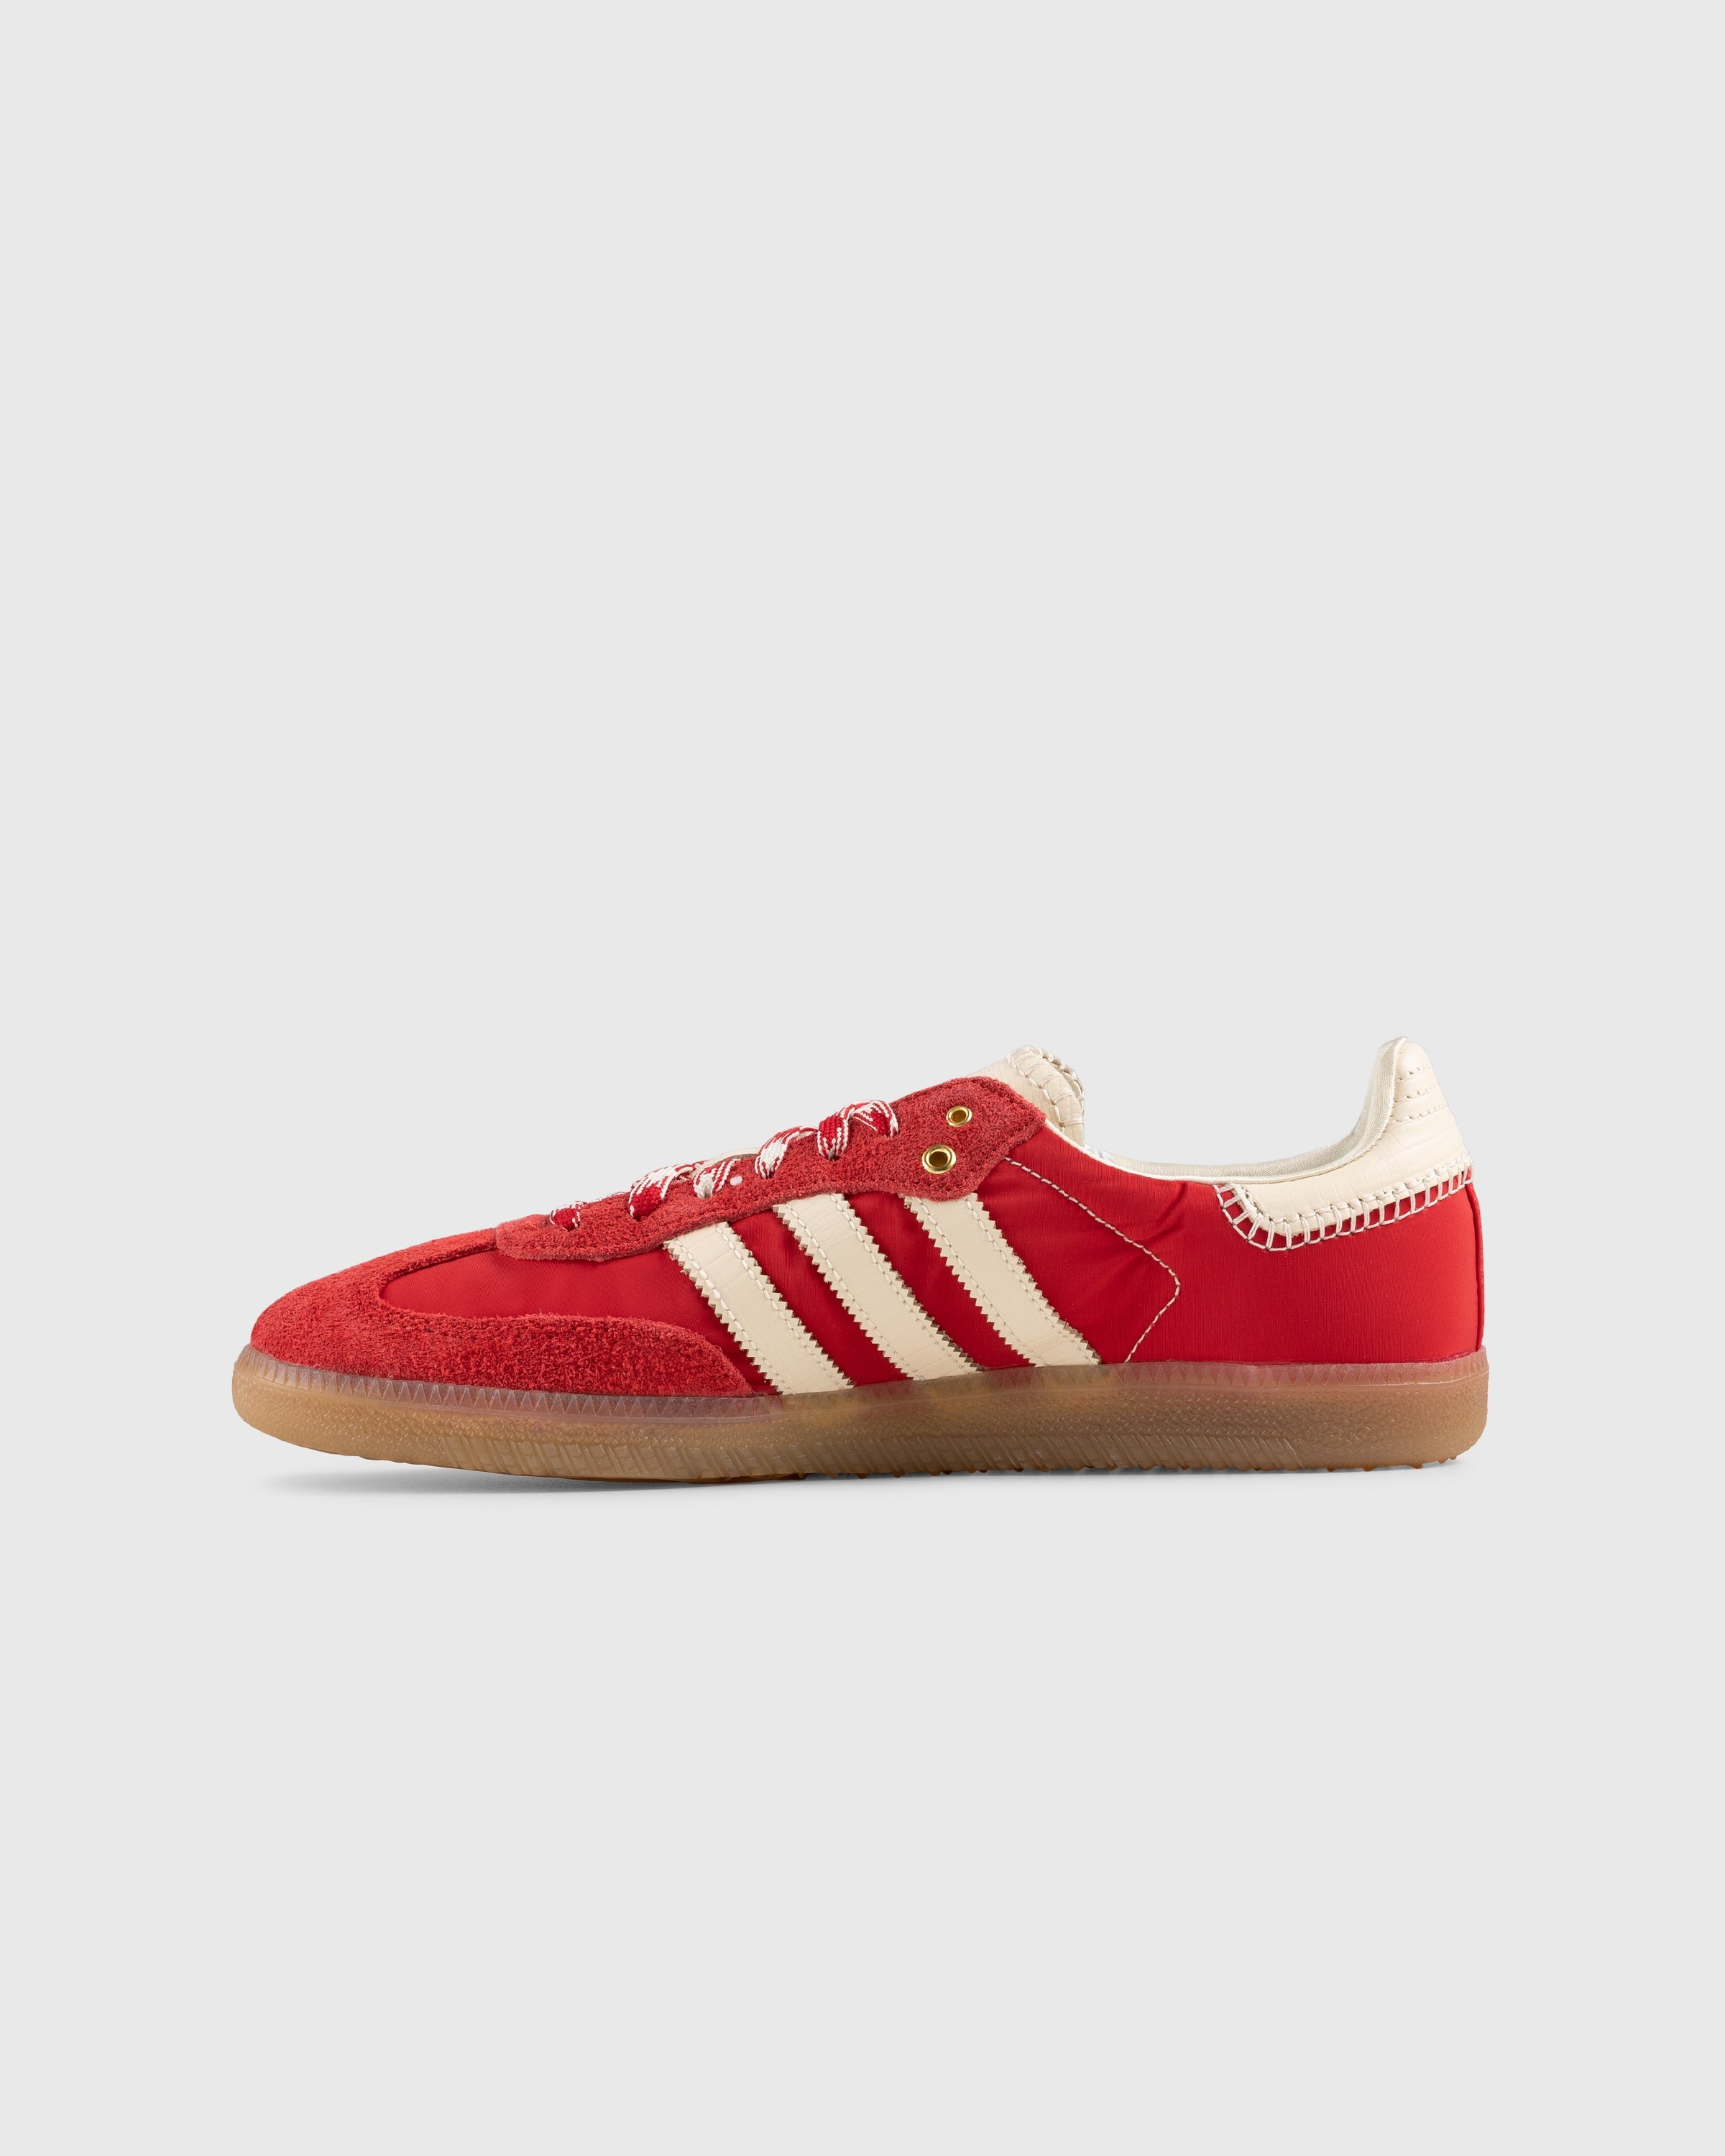 Adidas x Wales Bonner – WB Samba Scarlet/Ecru Tint/Scarlet - Sneakers - Red - Image 2